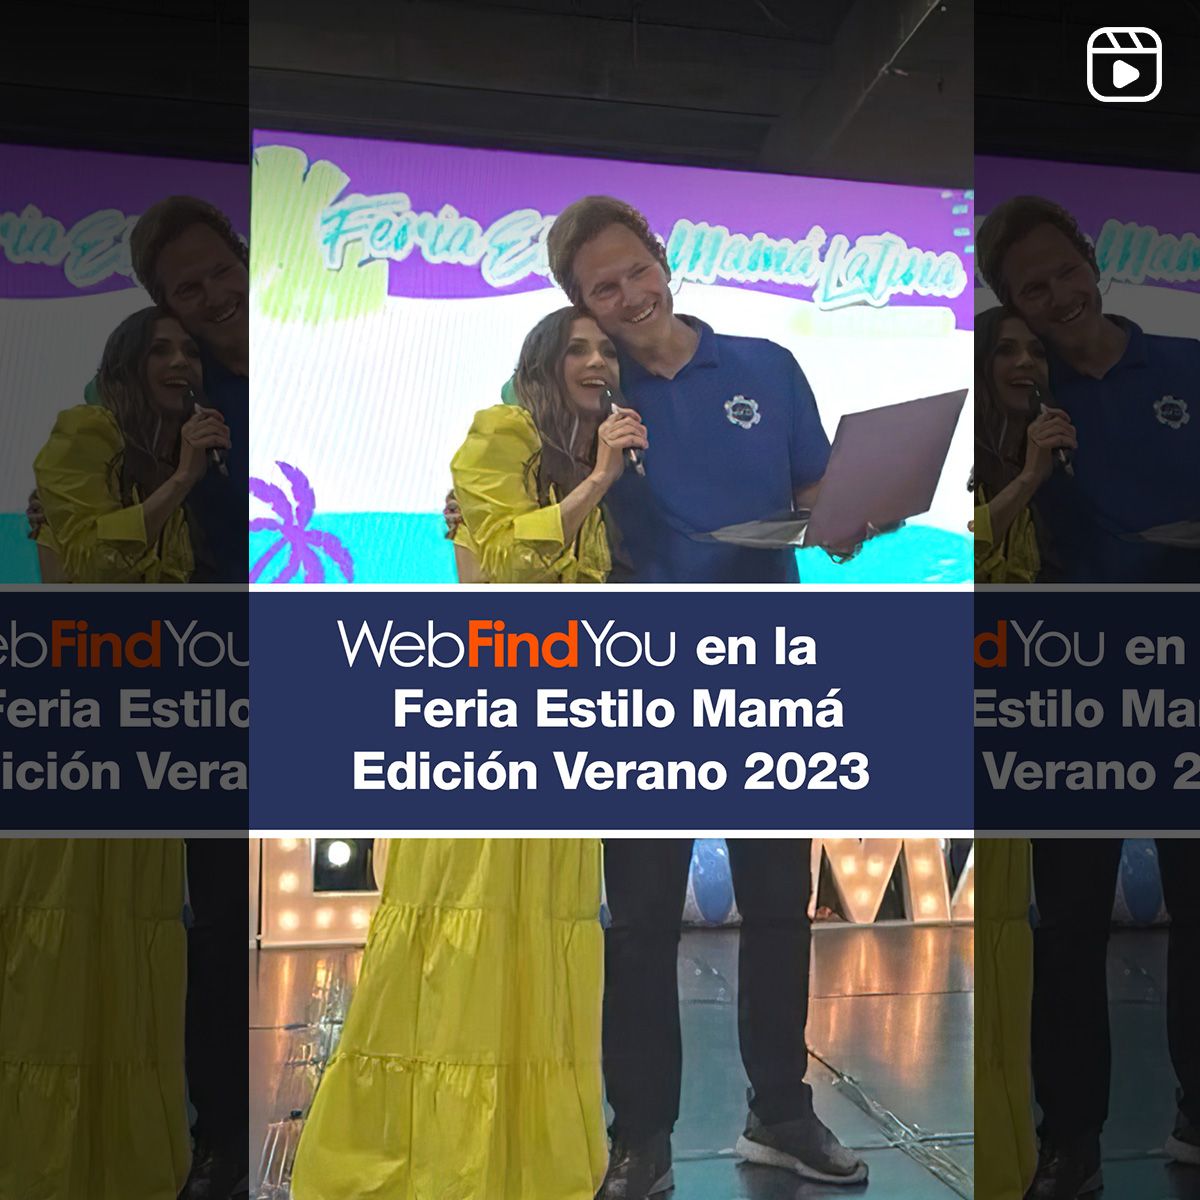 WebFindYou en la Feria Estilo Mamá Edición Verano 2023